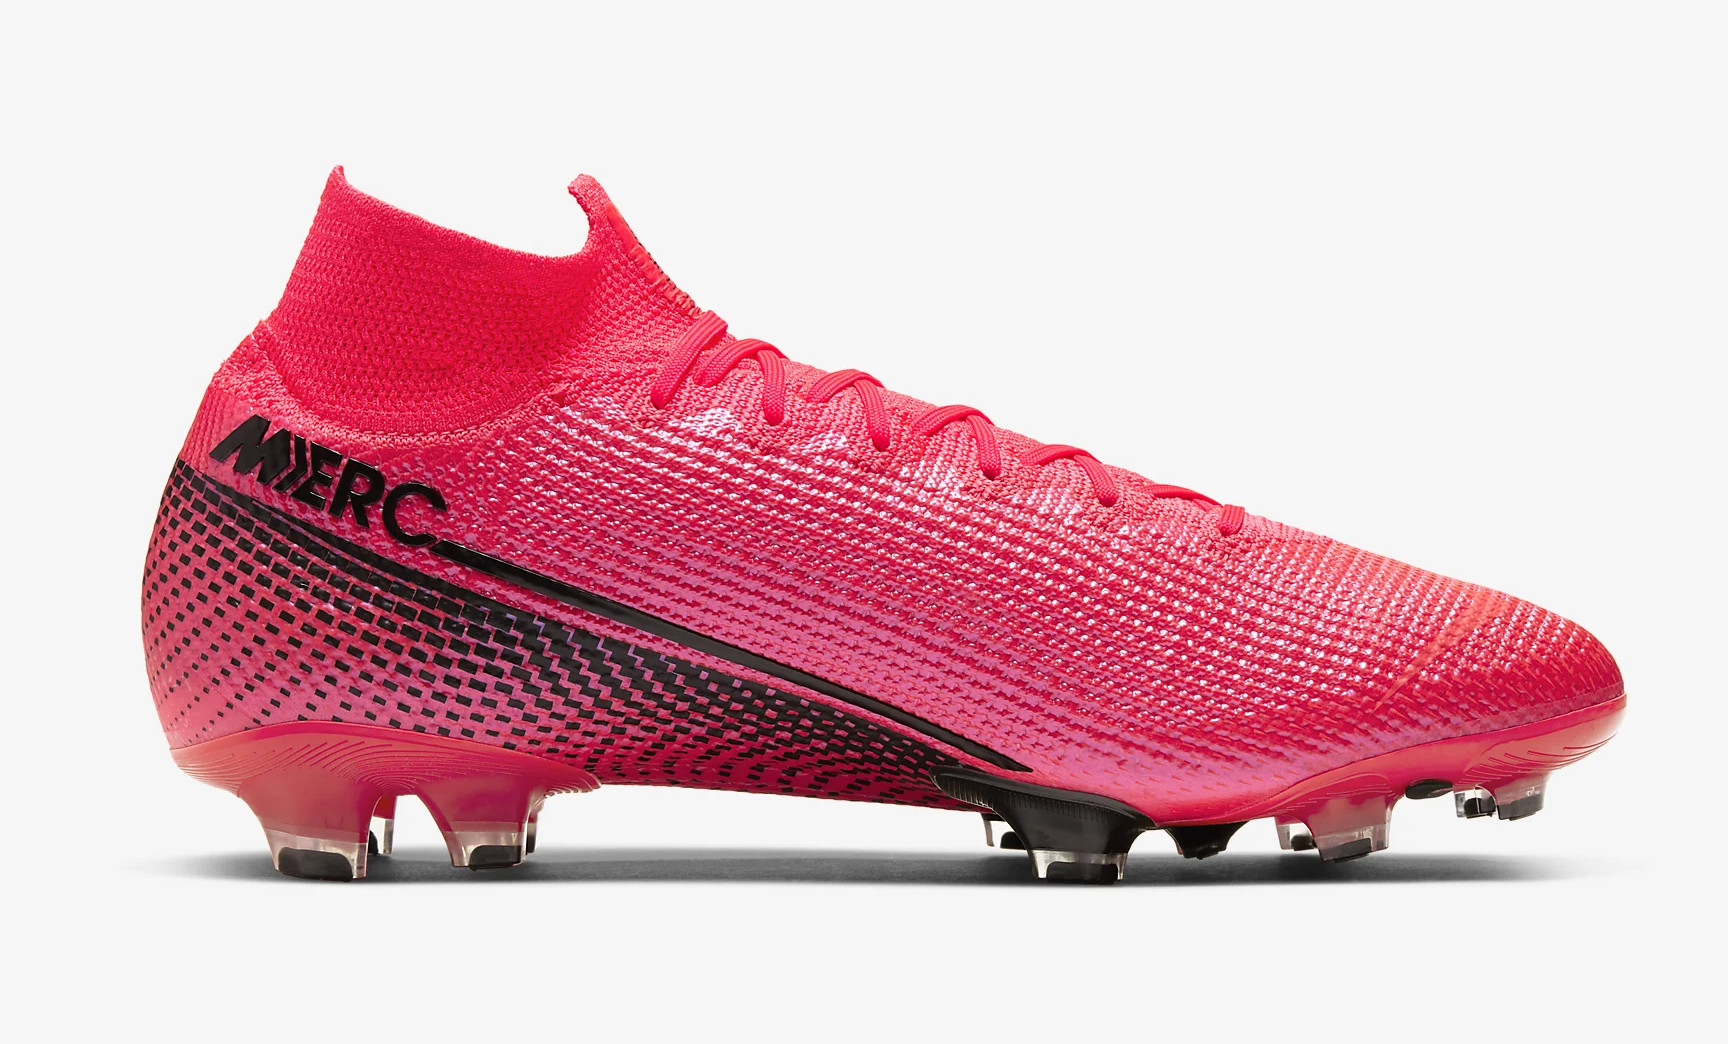 In de omgeving van doen alsof overschot Roze Nike Mercurial Superfly en Vapor voetbalschoenen - Voetbal-schoenen.eu